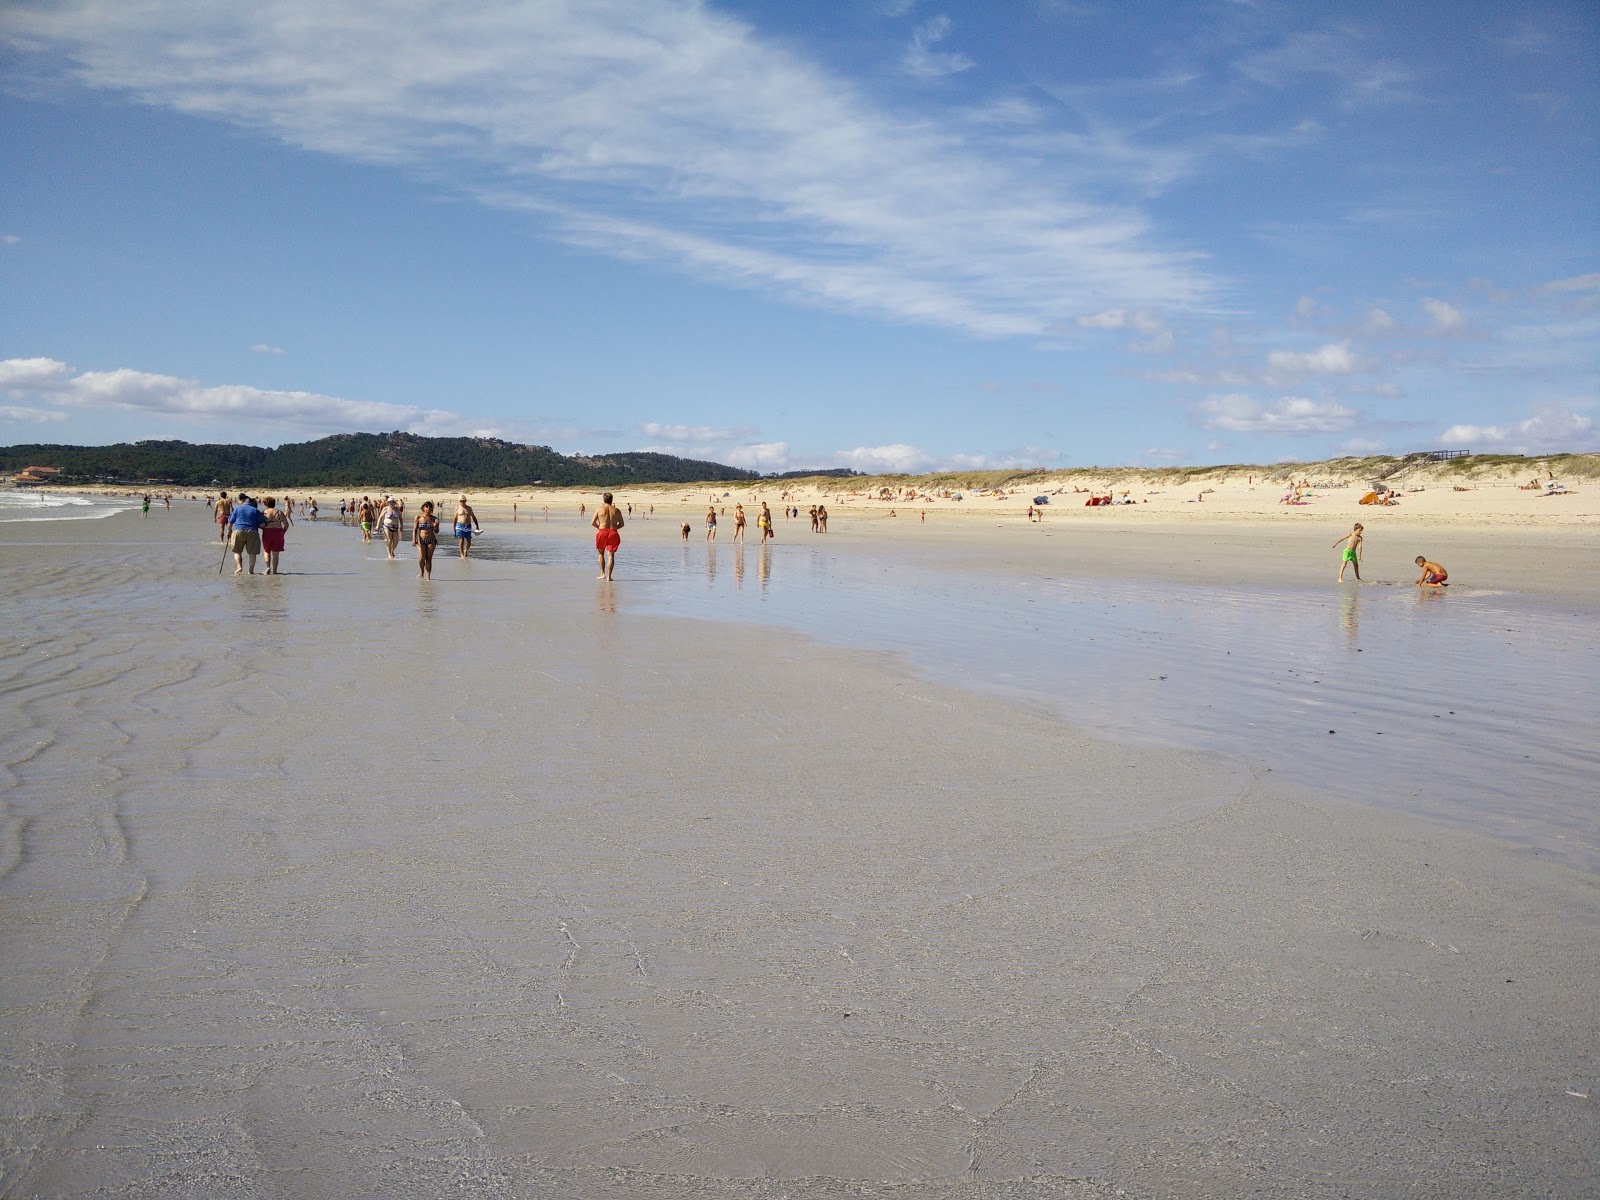 Zdjęcie Plaża Lanzada - popularne miejsce wśród znawców relaksu